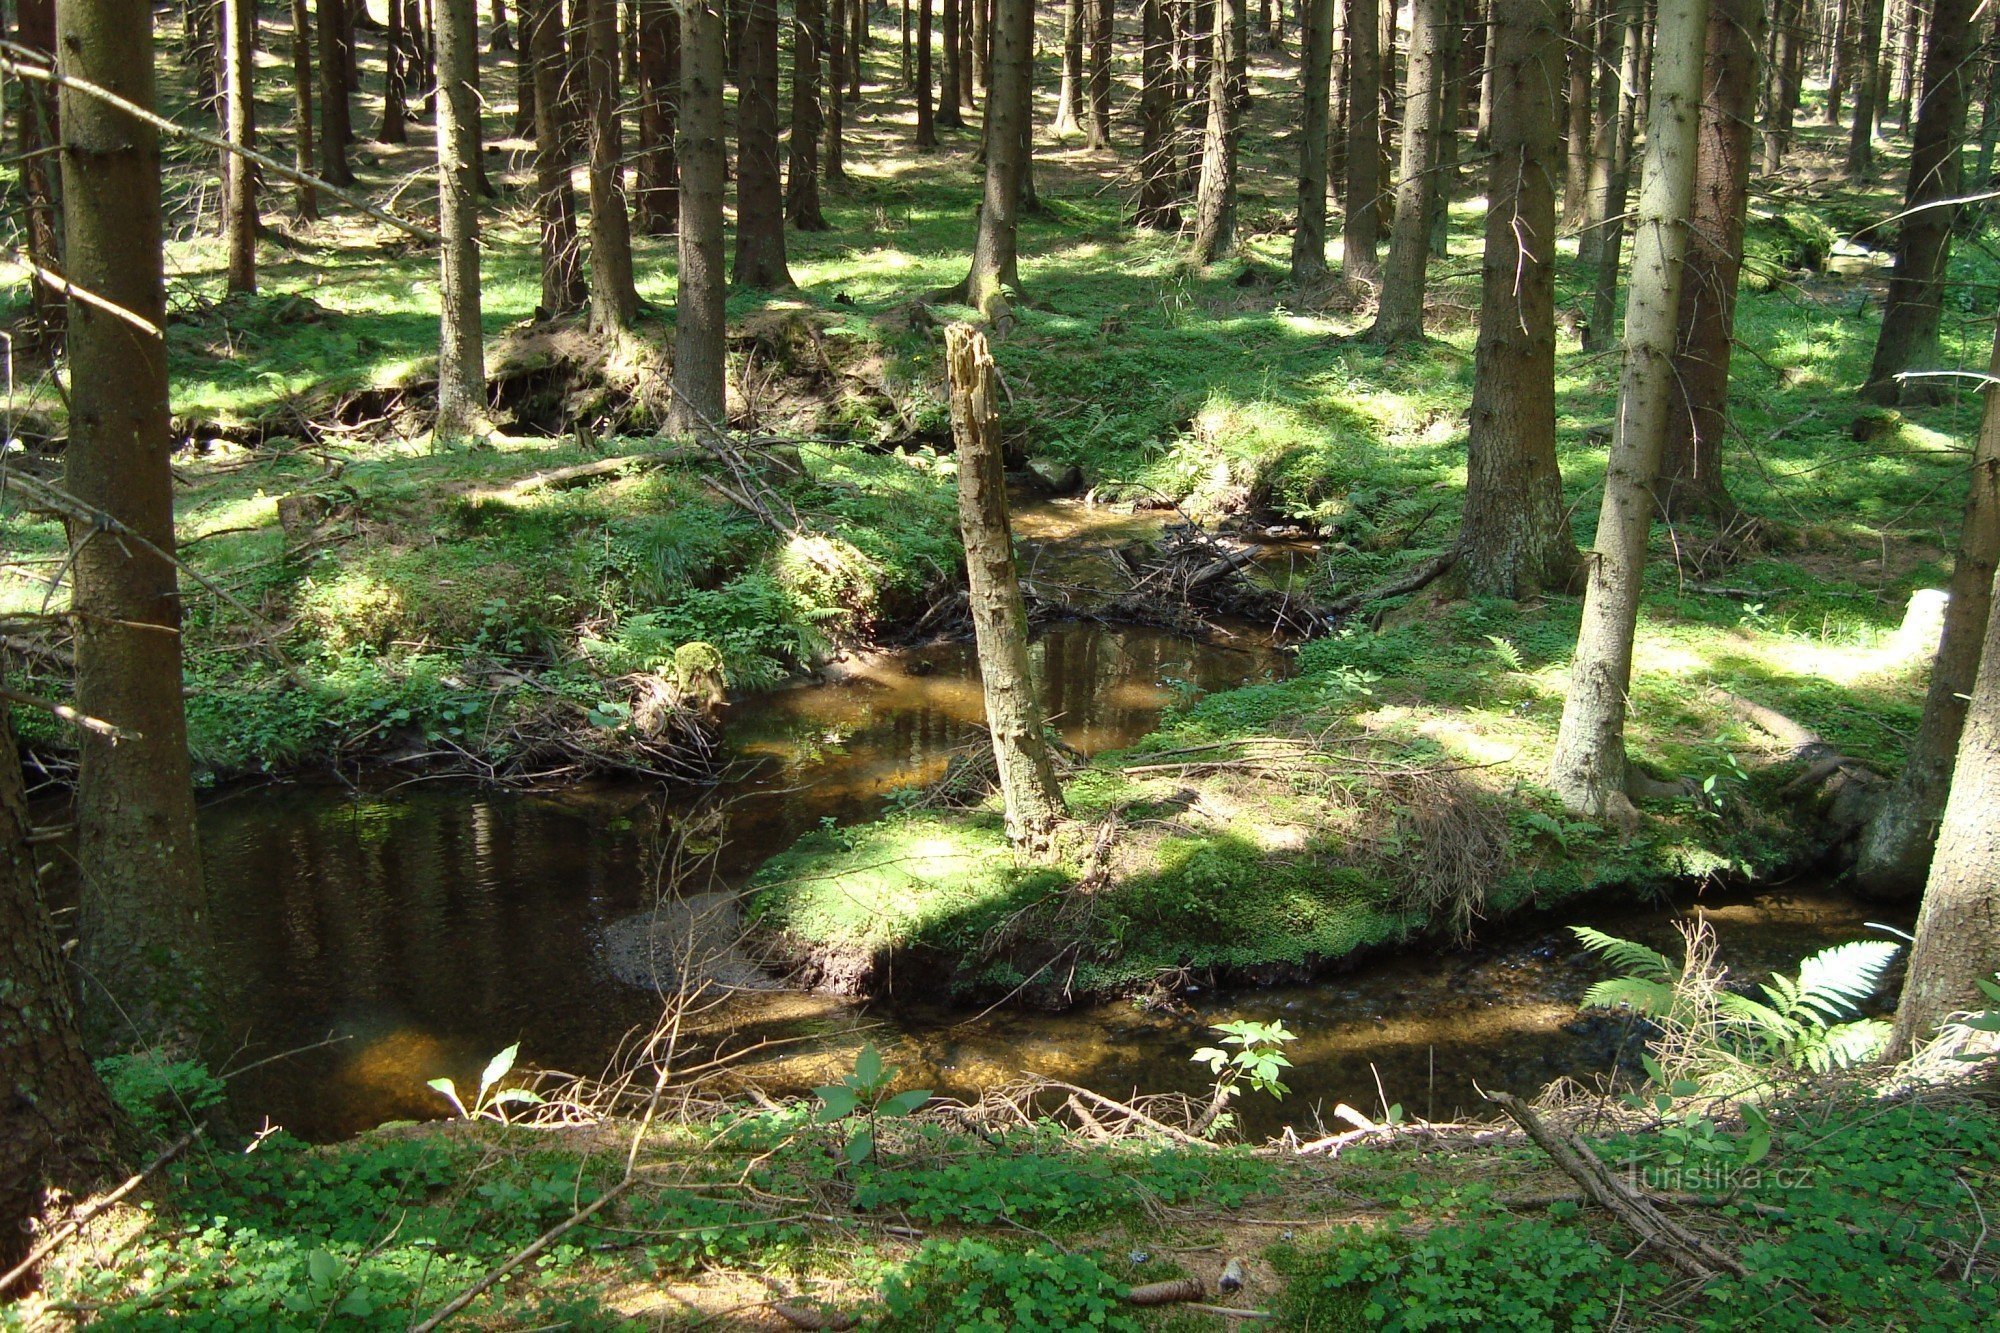 Huťský potok - một di tích thiên nhiên